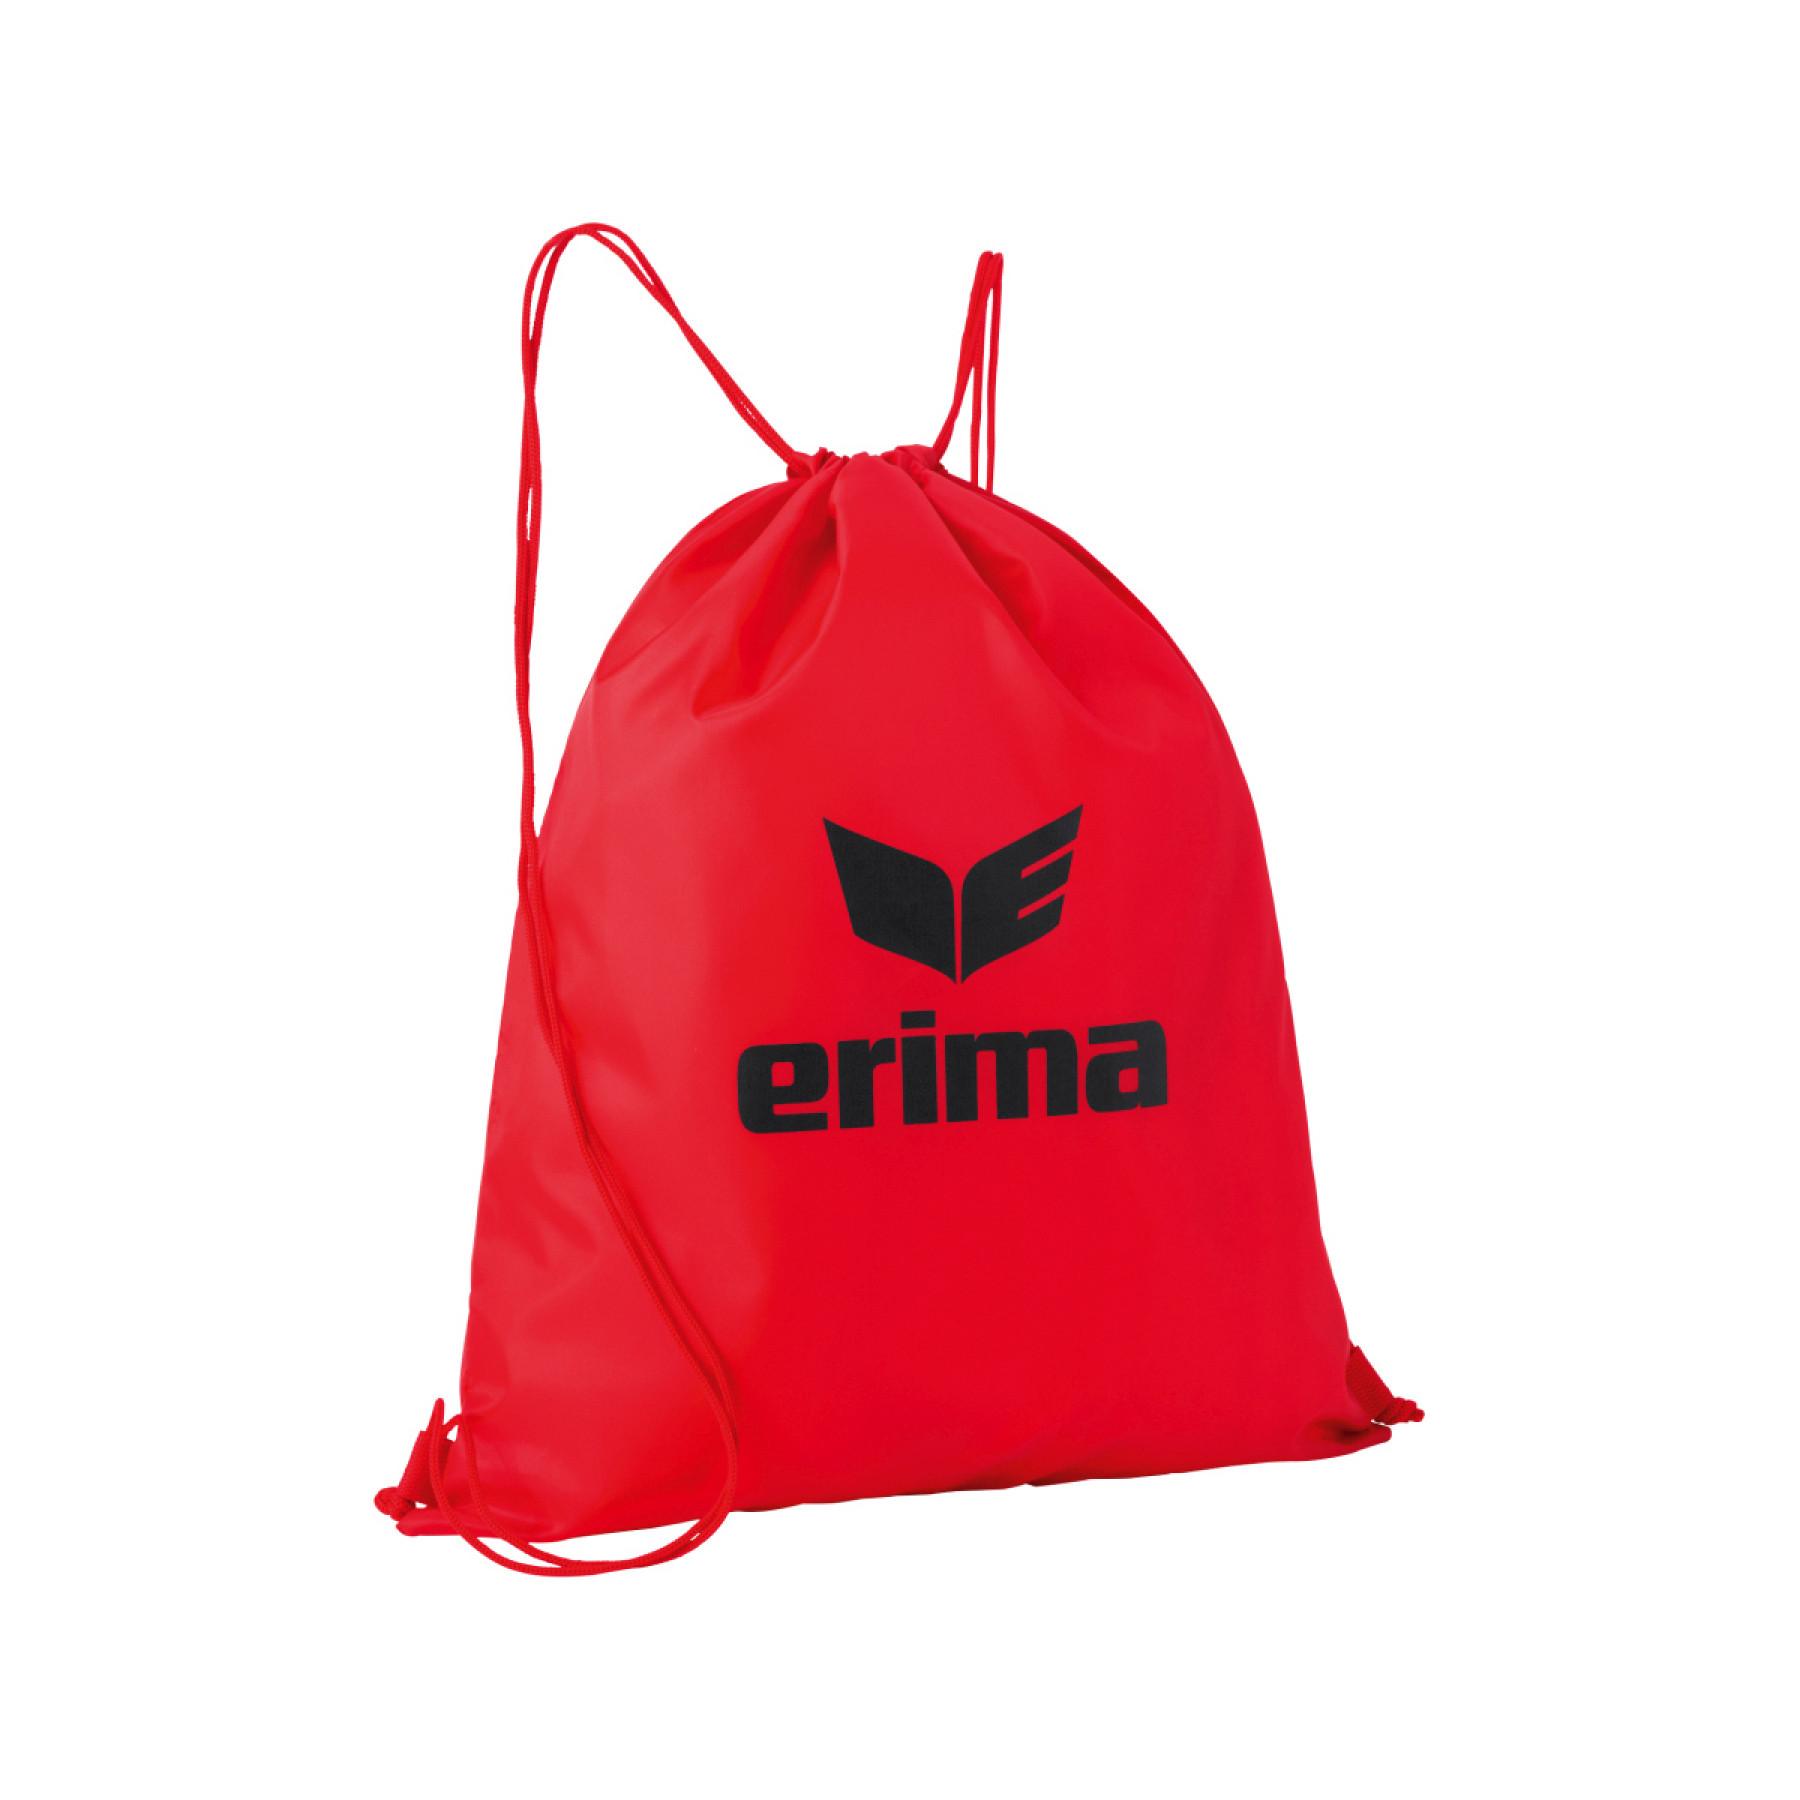 Multifunctional bag Erima